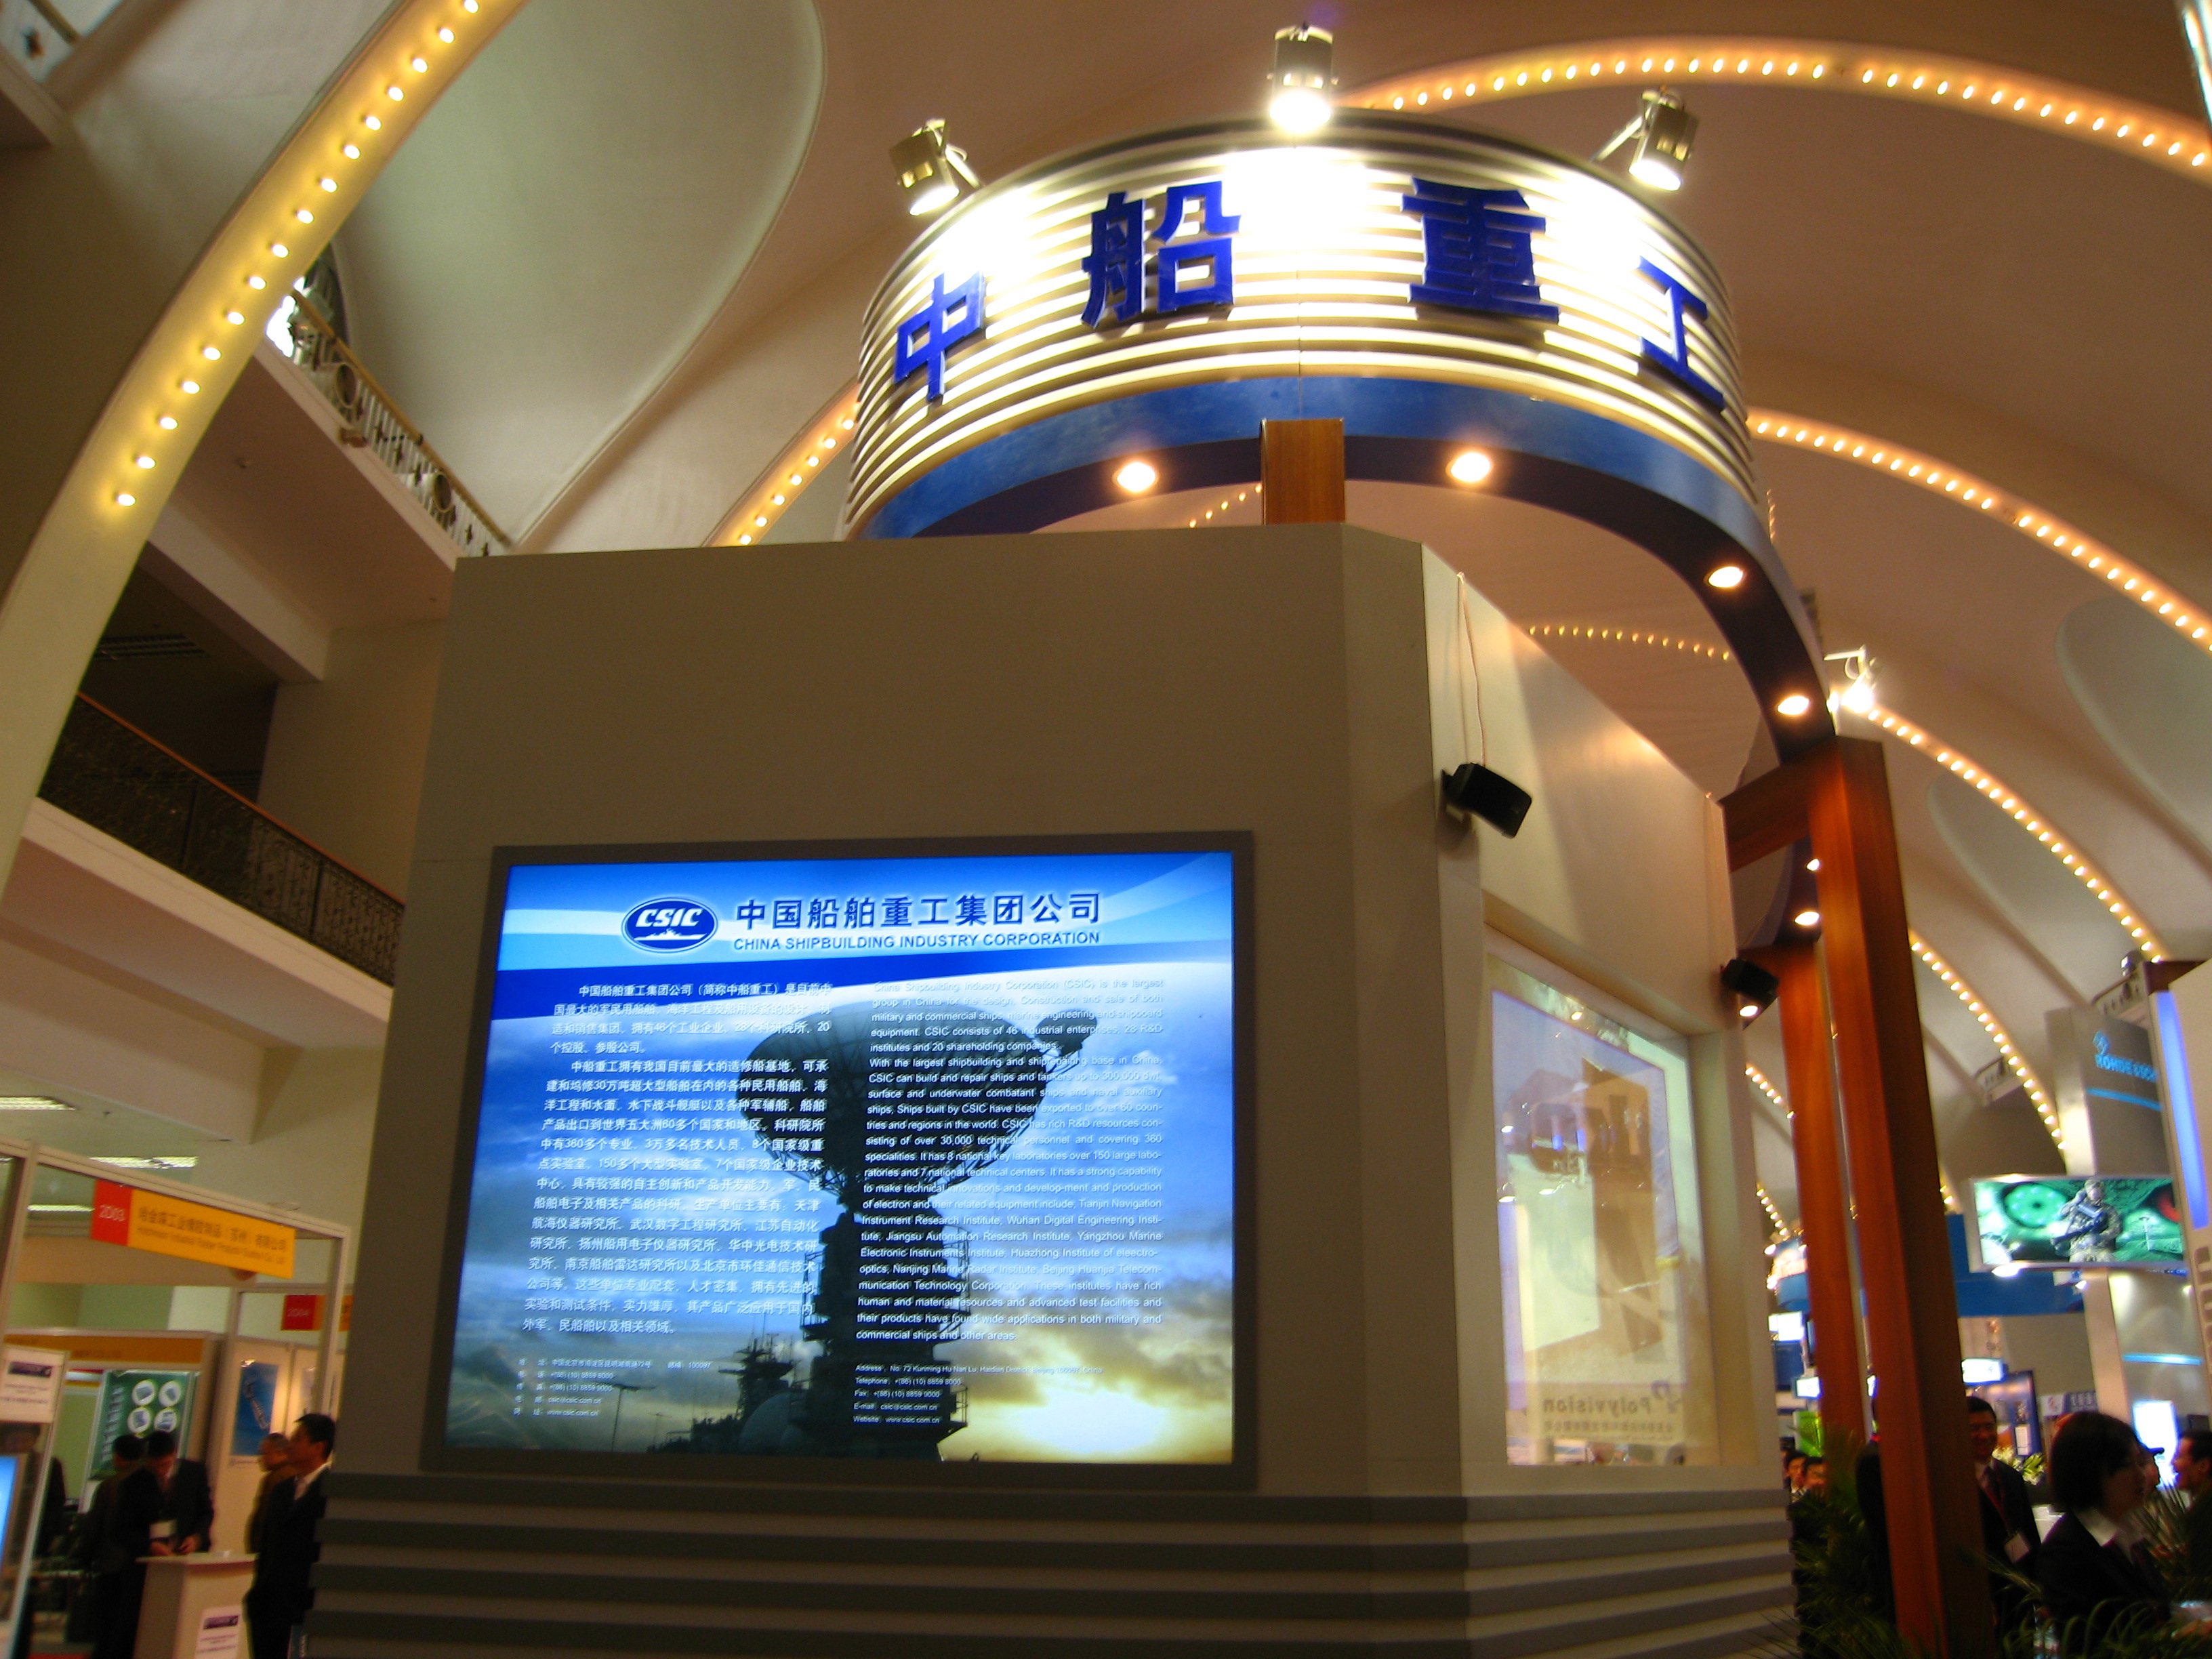 中国船舶重工集团公司着重展出嵌入式系统技术以及显示技术